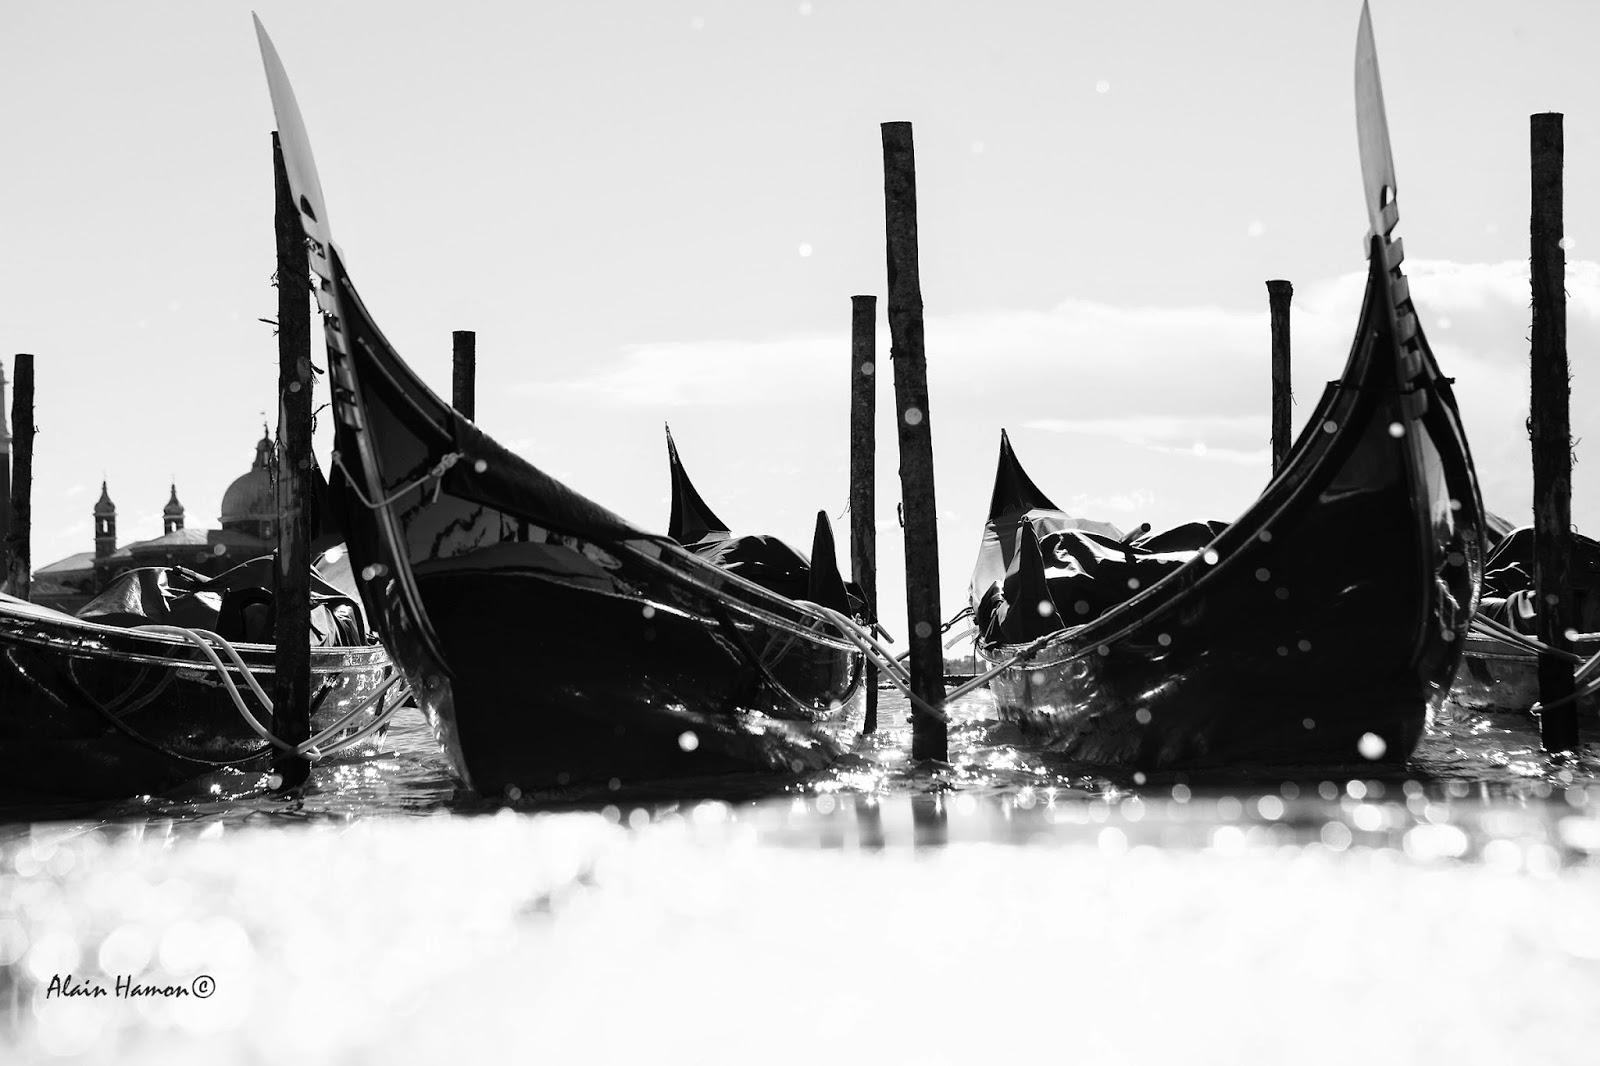 photos de gondoles à Venise un jour d'acqua alta